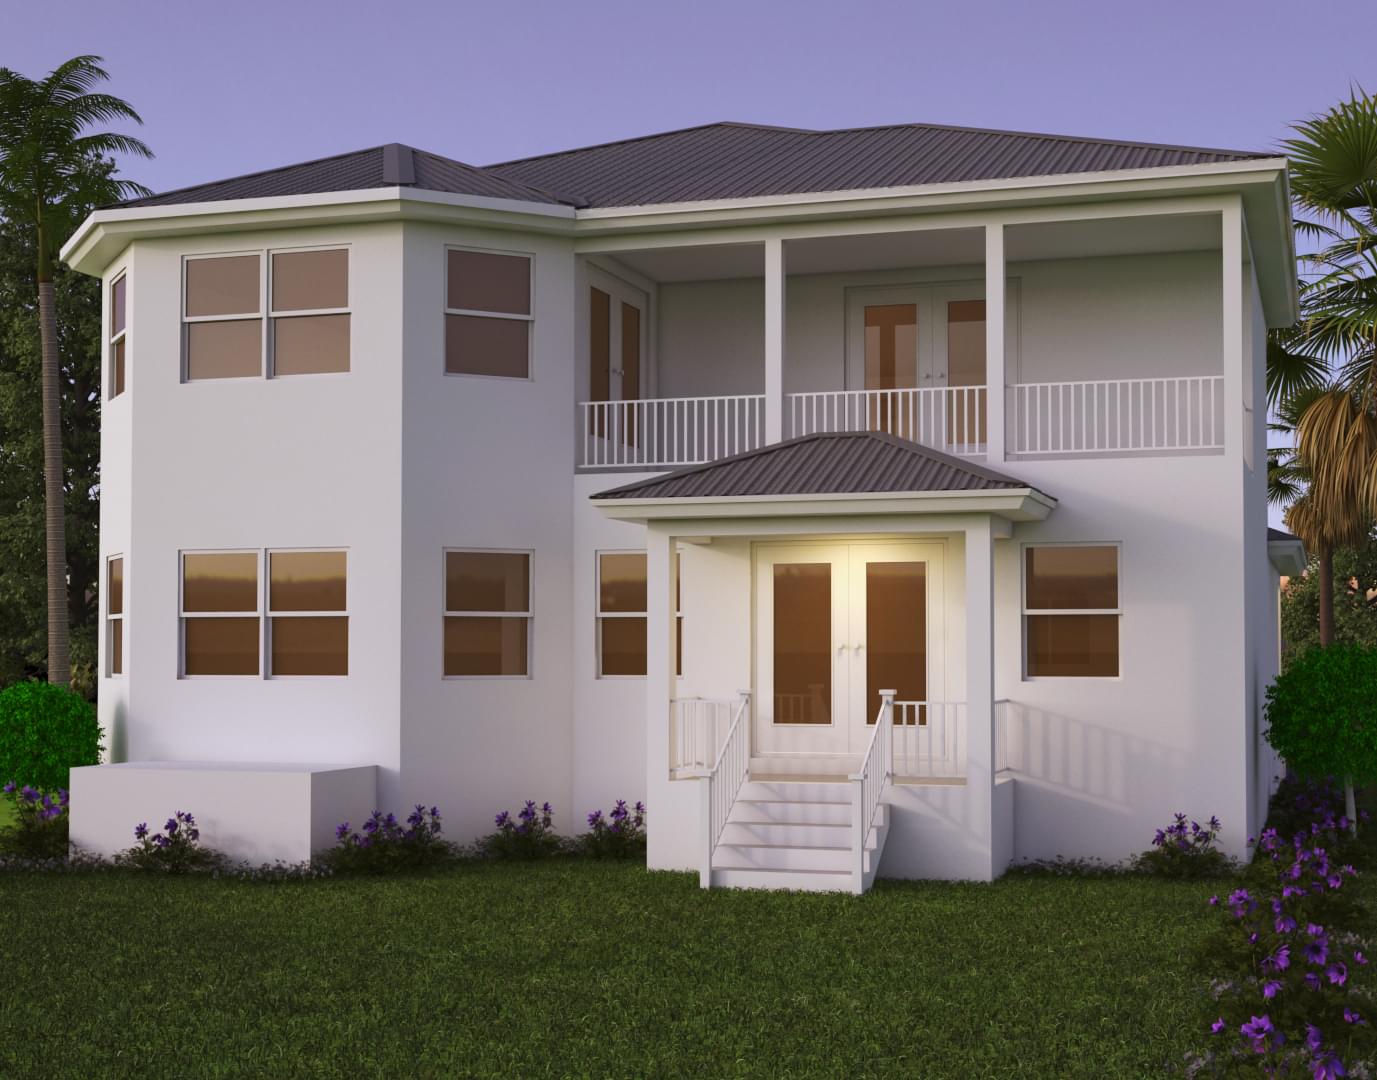 Avantgarde Design Home Builders Florida Saint Lucia Front View